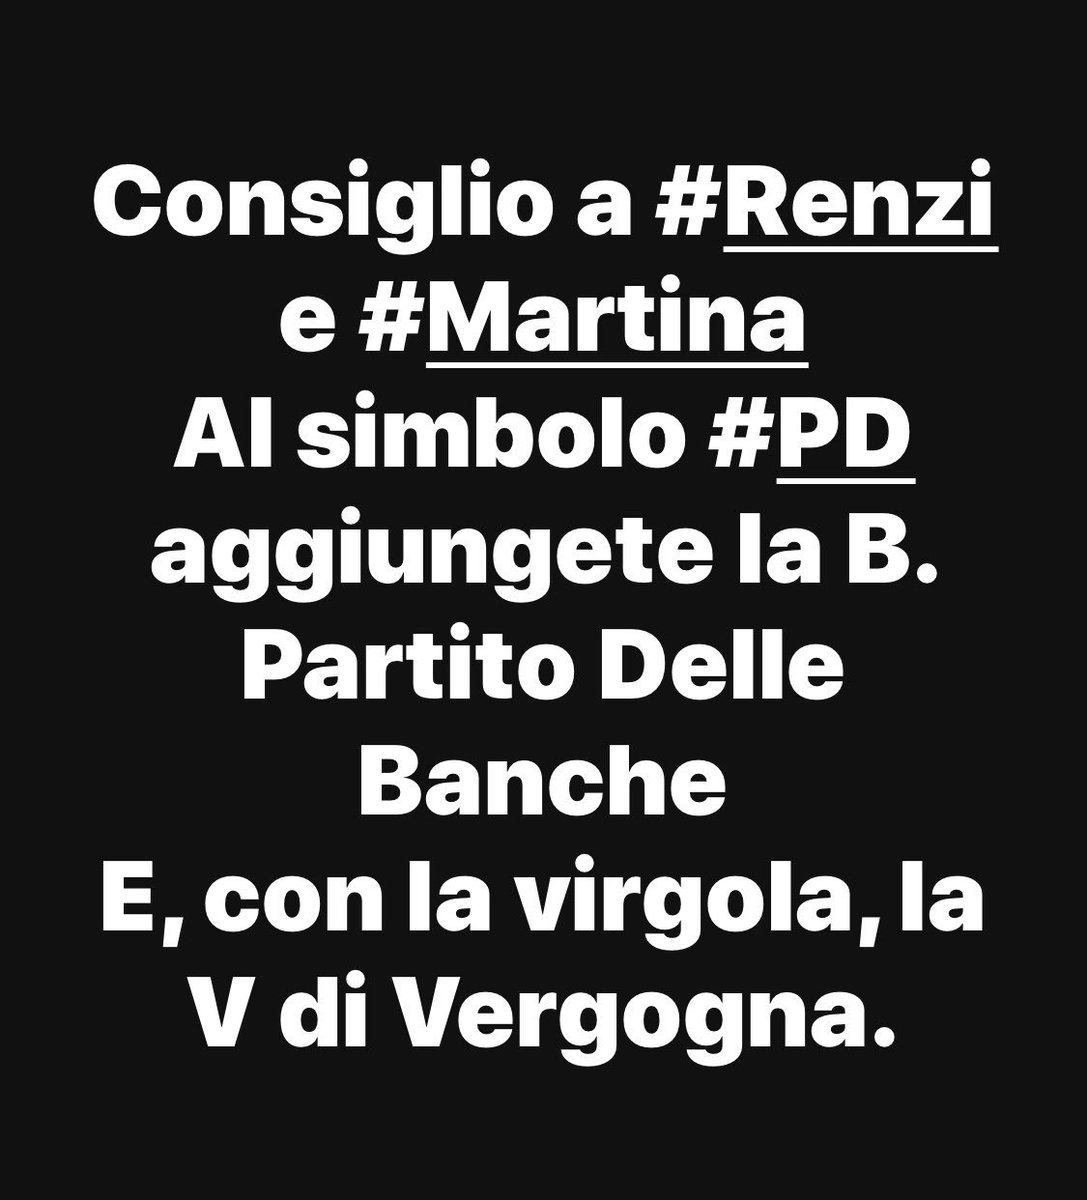 Gli infami di #Repubblica parlano di #StampaLibera quando hanno la bava alla bocca da quanto hanno leccato il #PD 
Lo #spread sale a causa di chi?
Di chi lavora per i Cittadini?
Ecco il CONSIGLIO che dó a #Renzi e #Martina 
#ottoemezzo